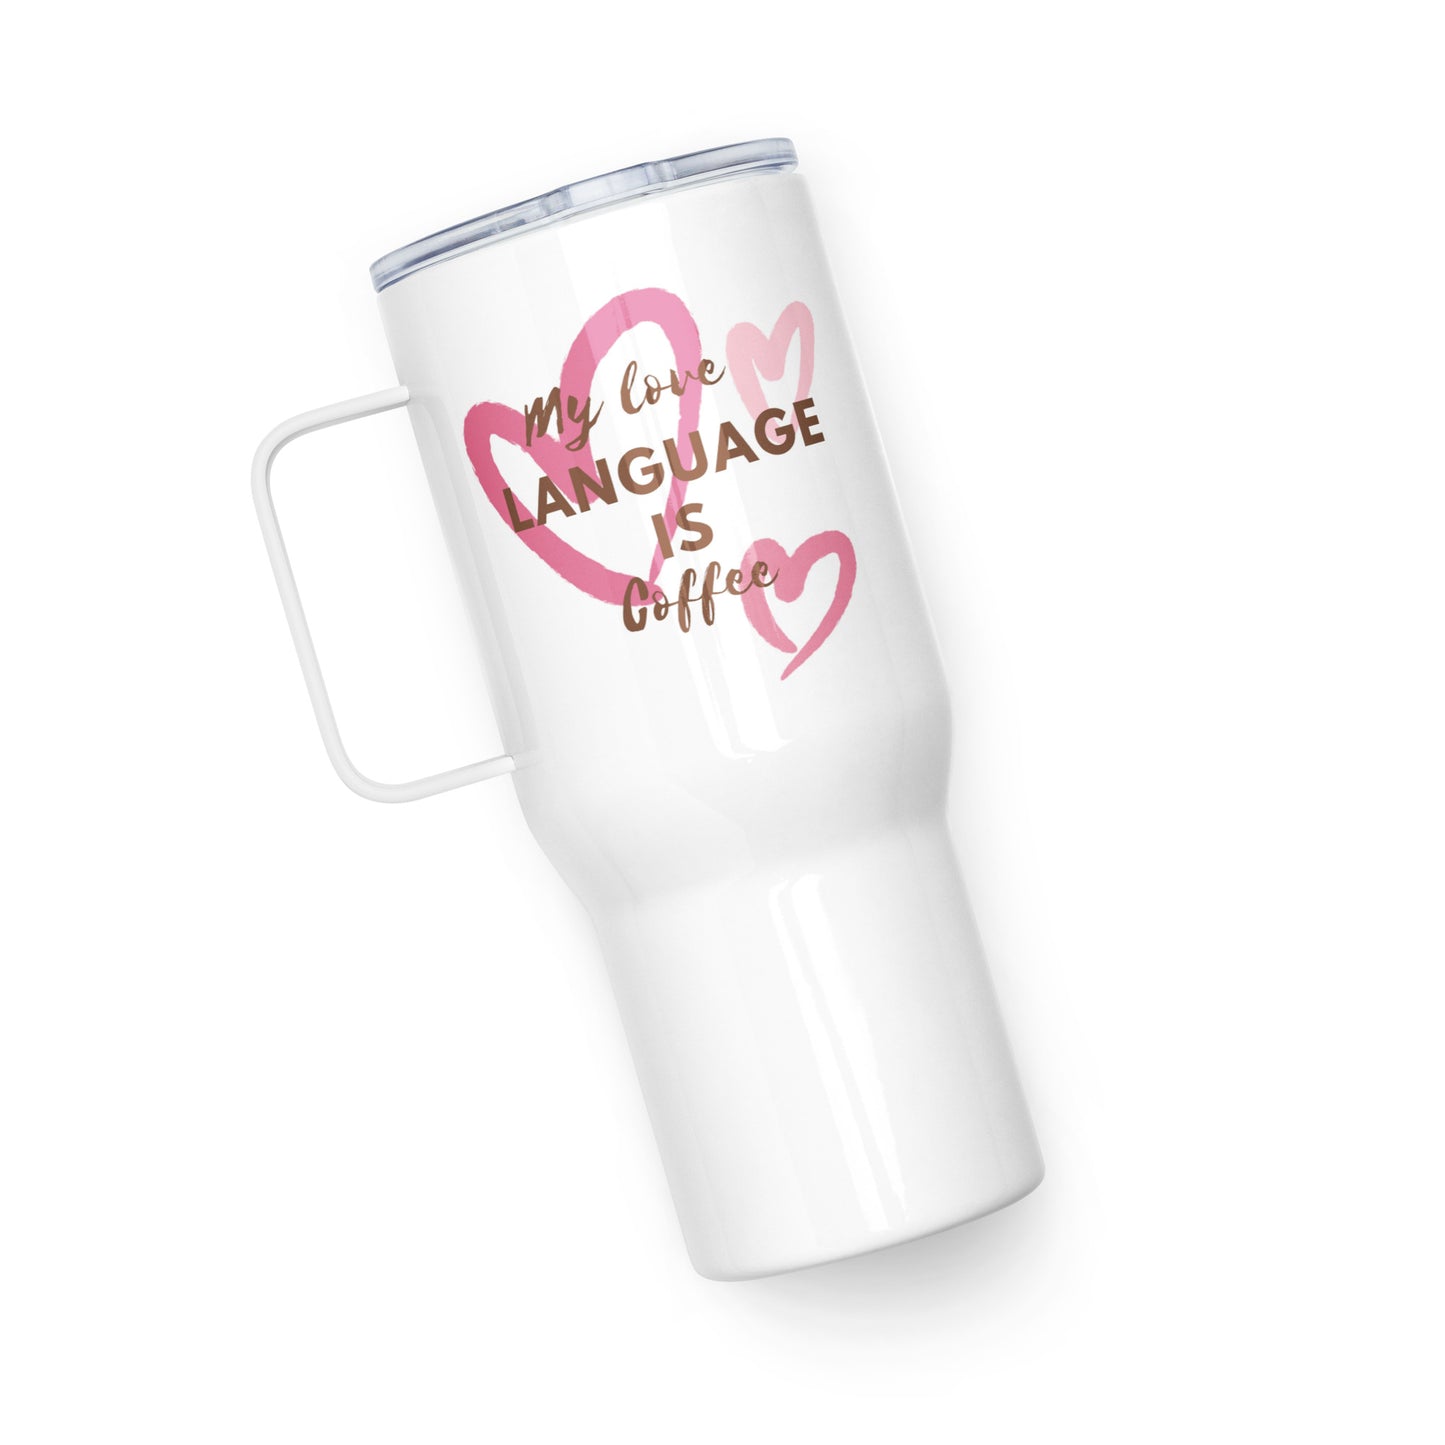 "My Love Language is Coffee" - Travel mug with a handle